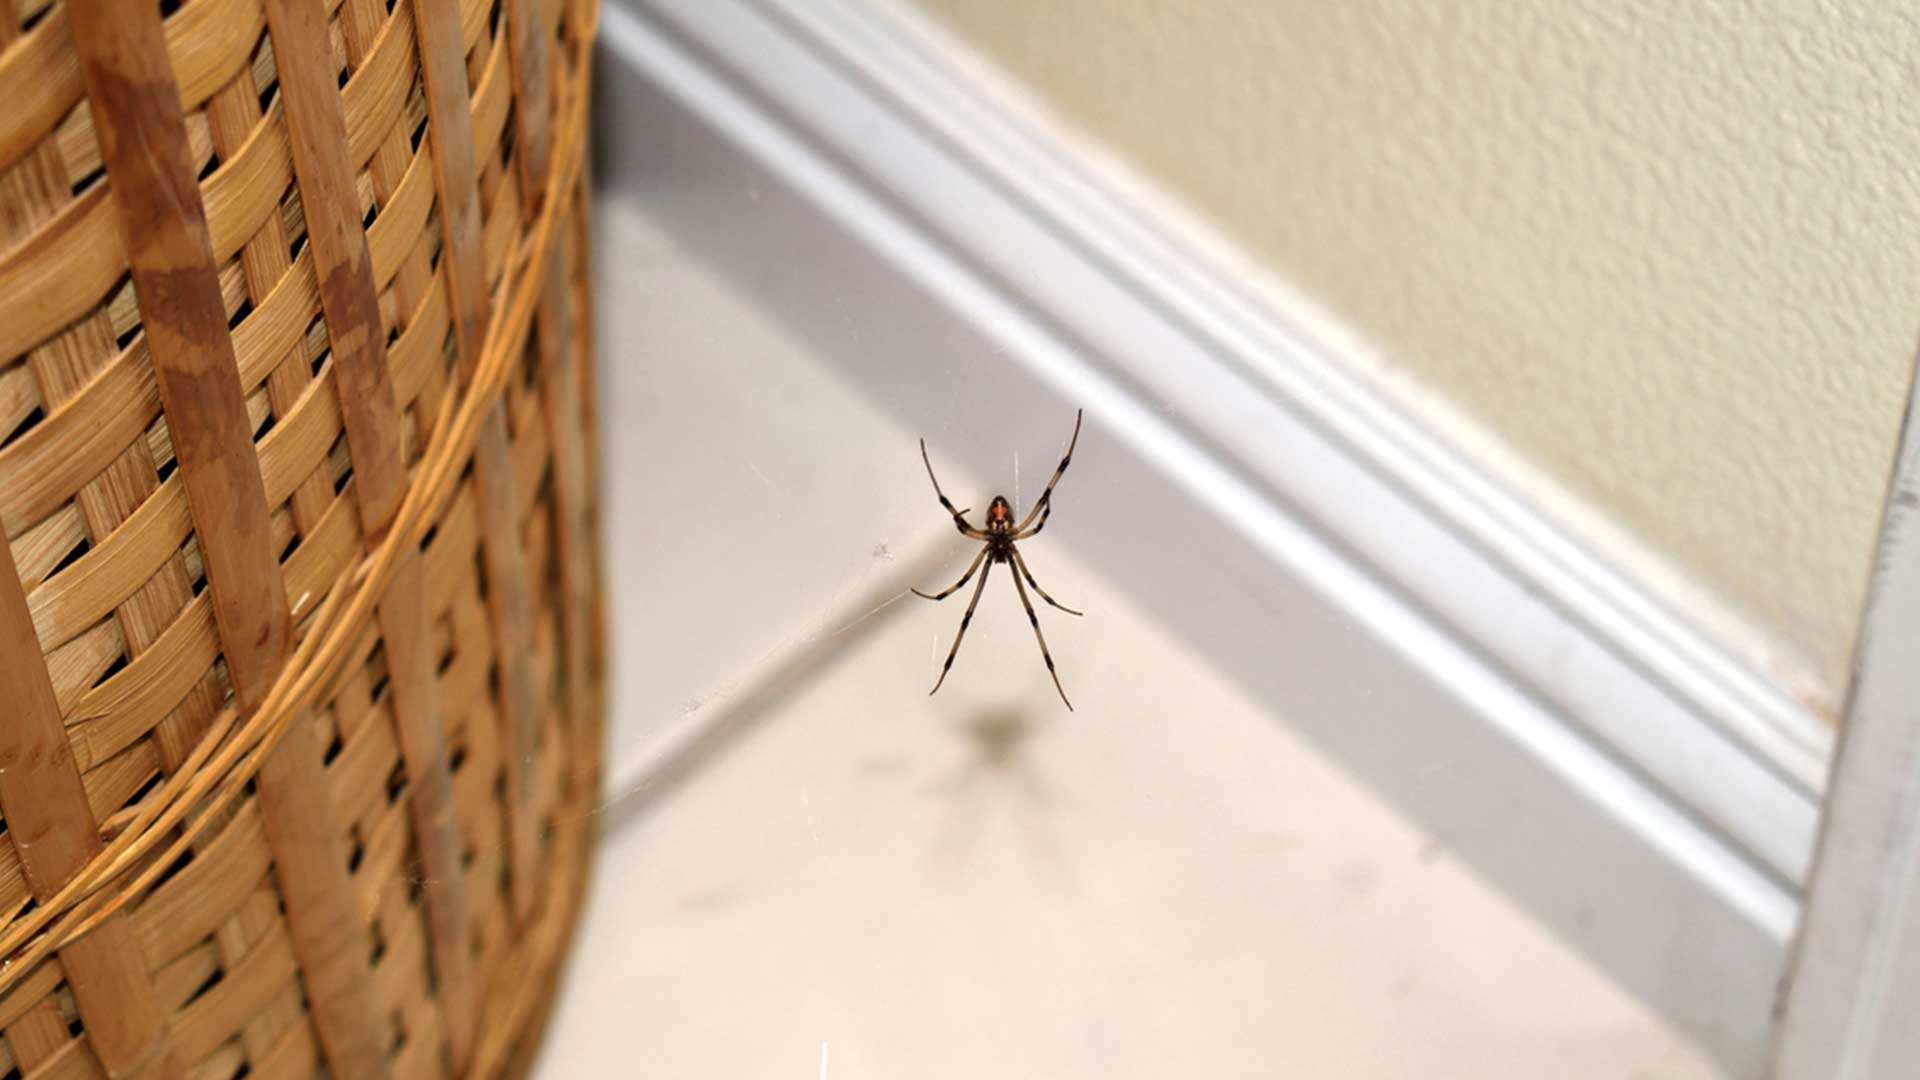 spider on web next to wicker basket